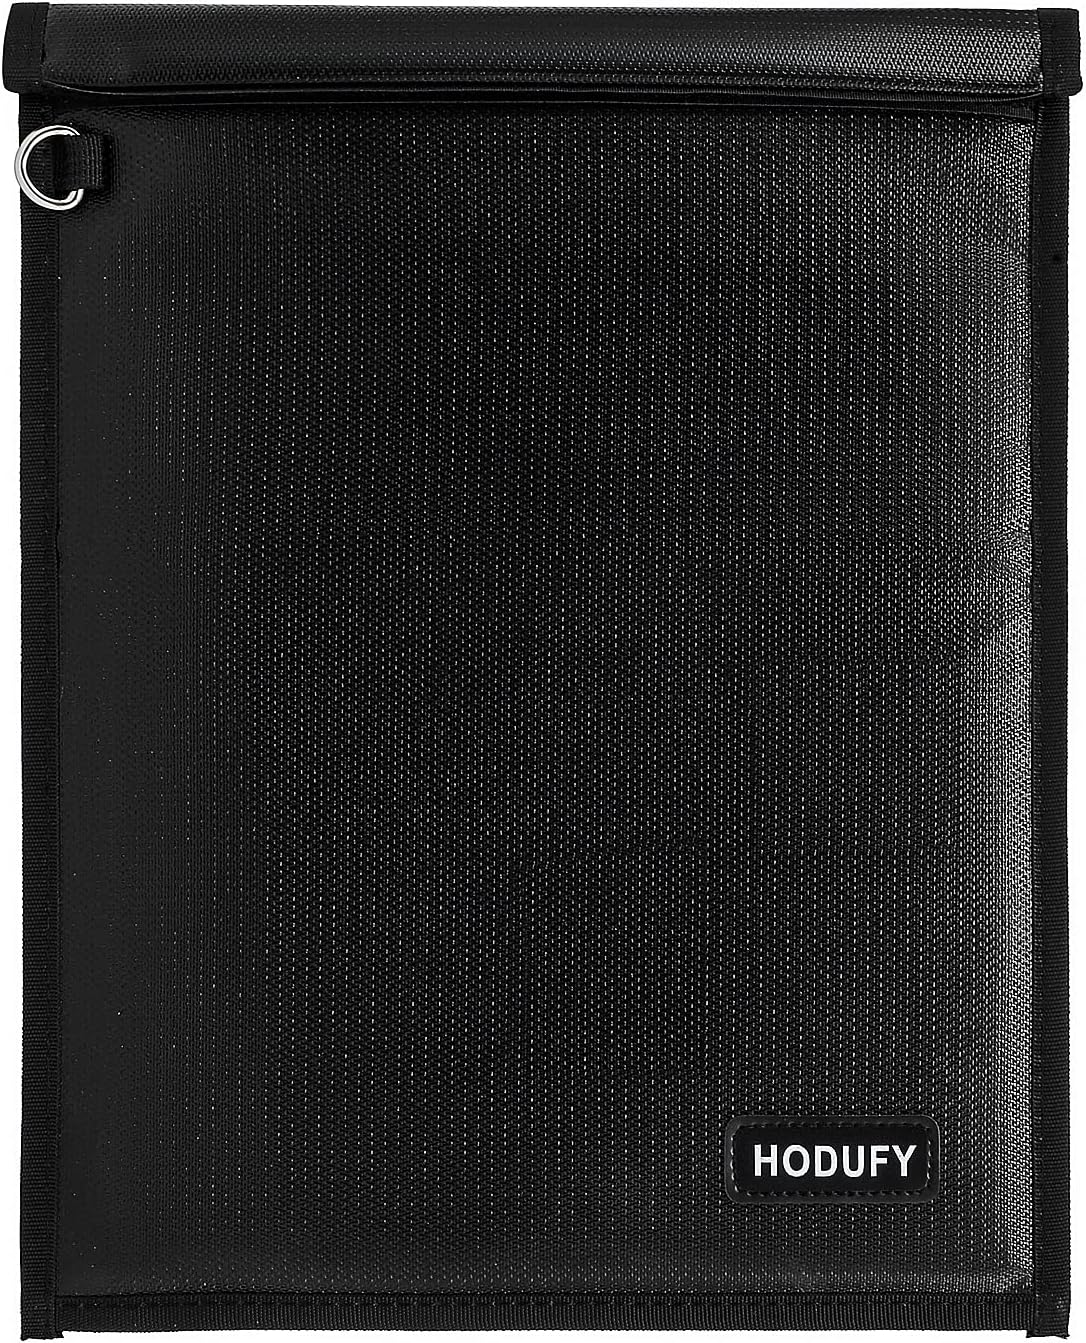 Hodufy タブレット用ファラデーバッグ (15 x 10